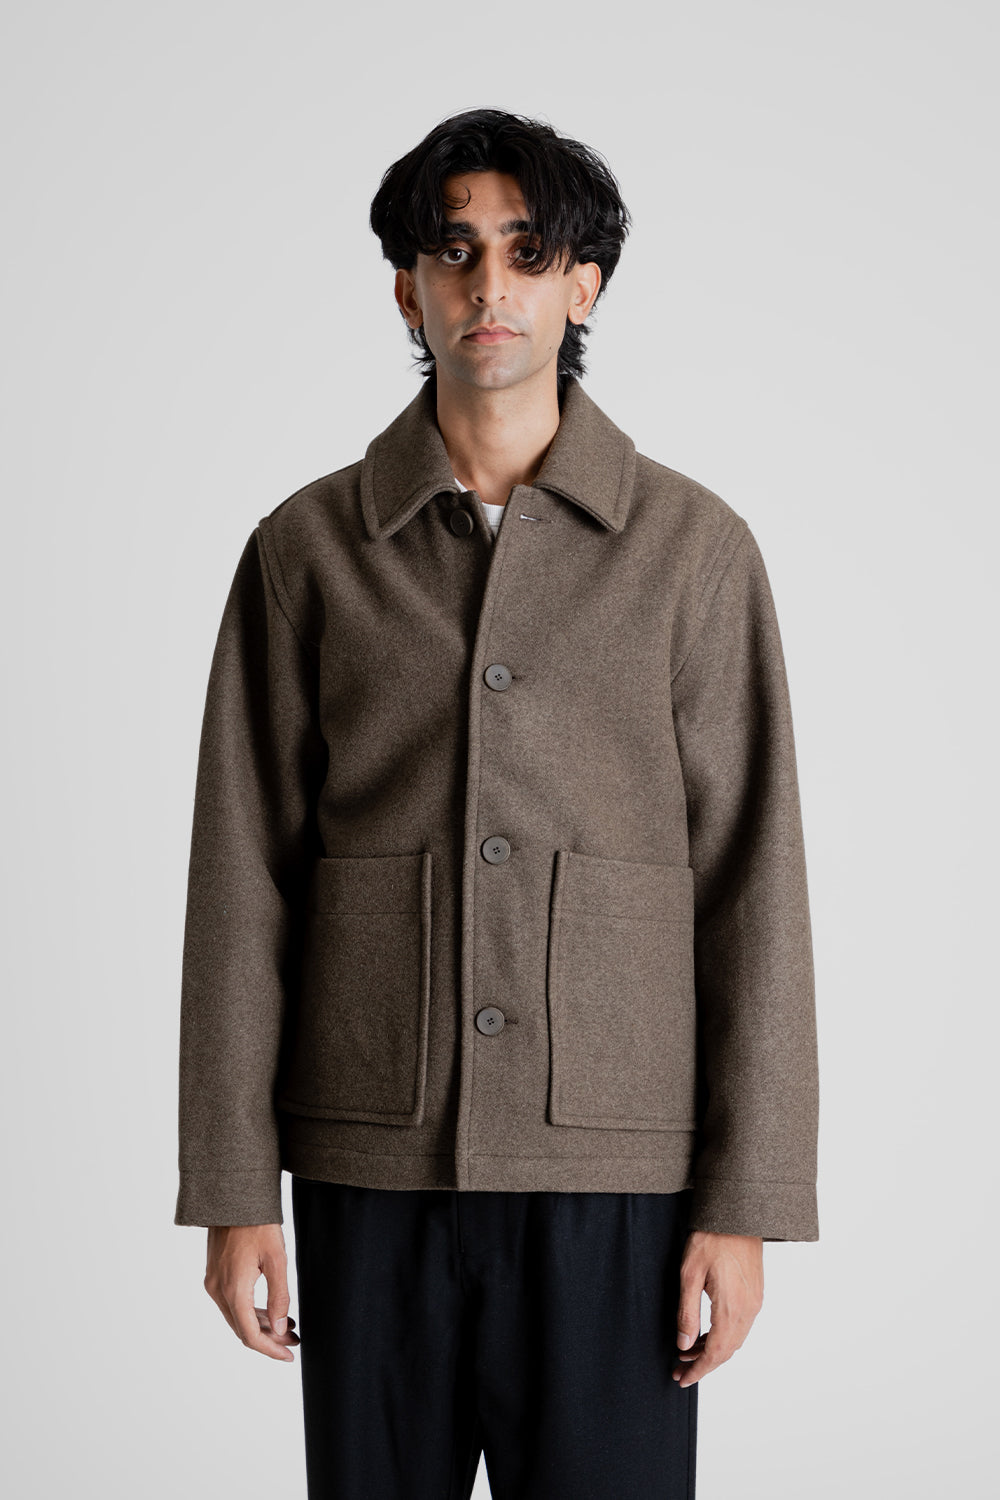 Parages New Aubrac Wool Jacket in Brown Melange